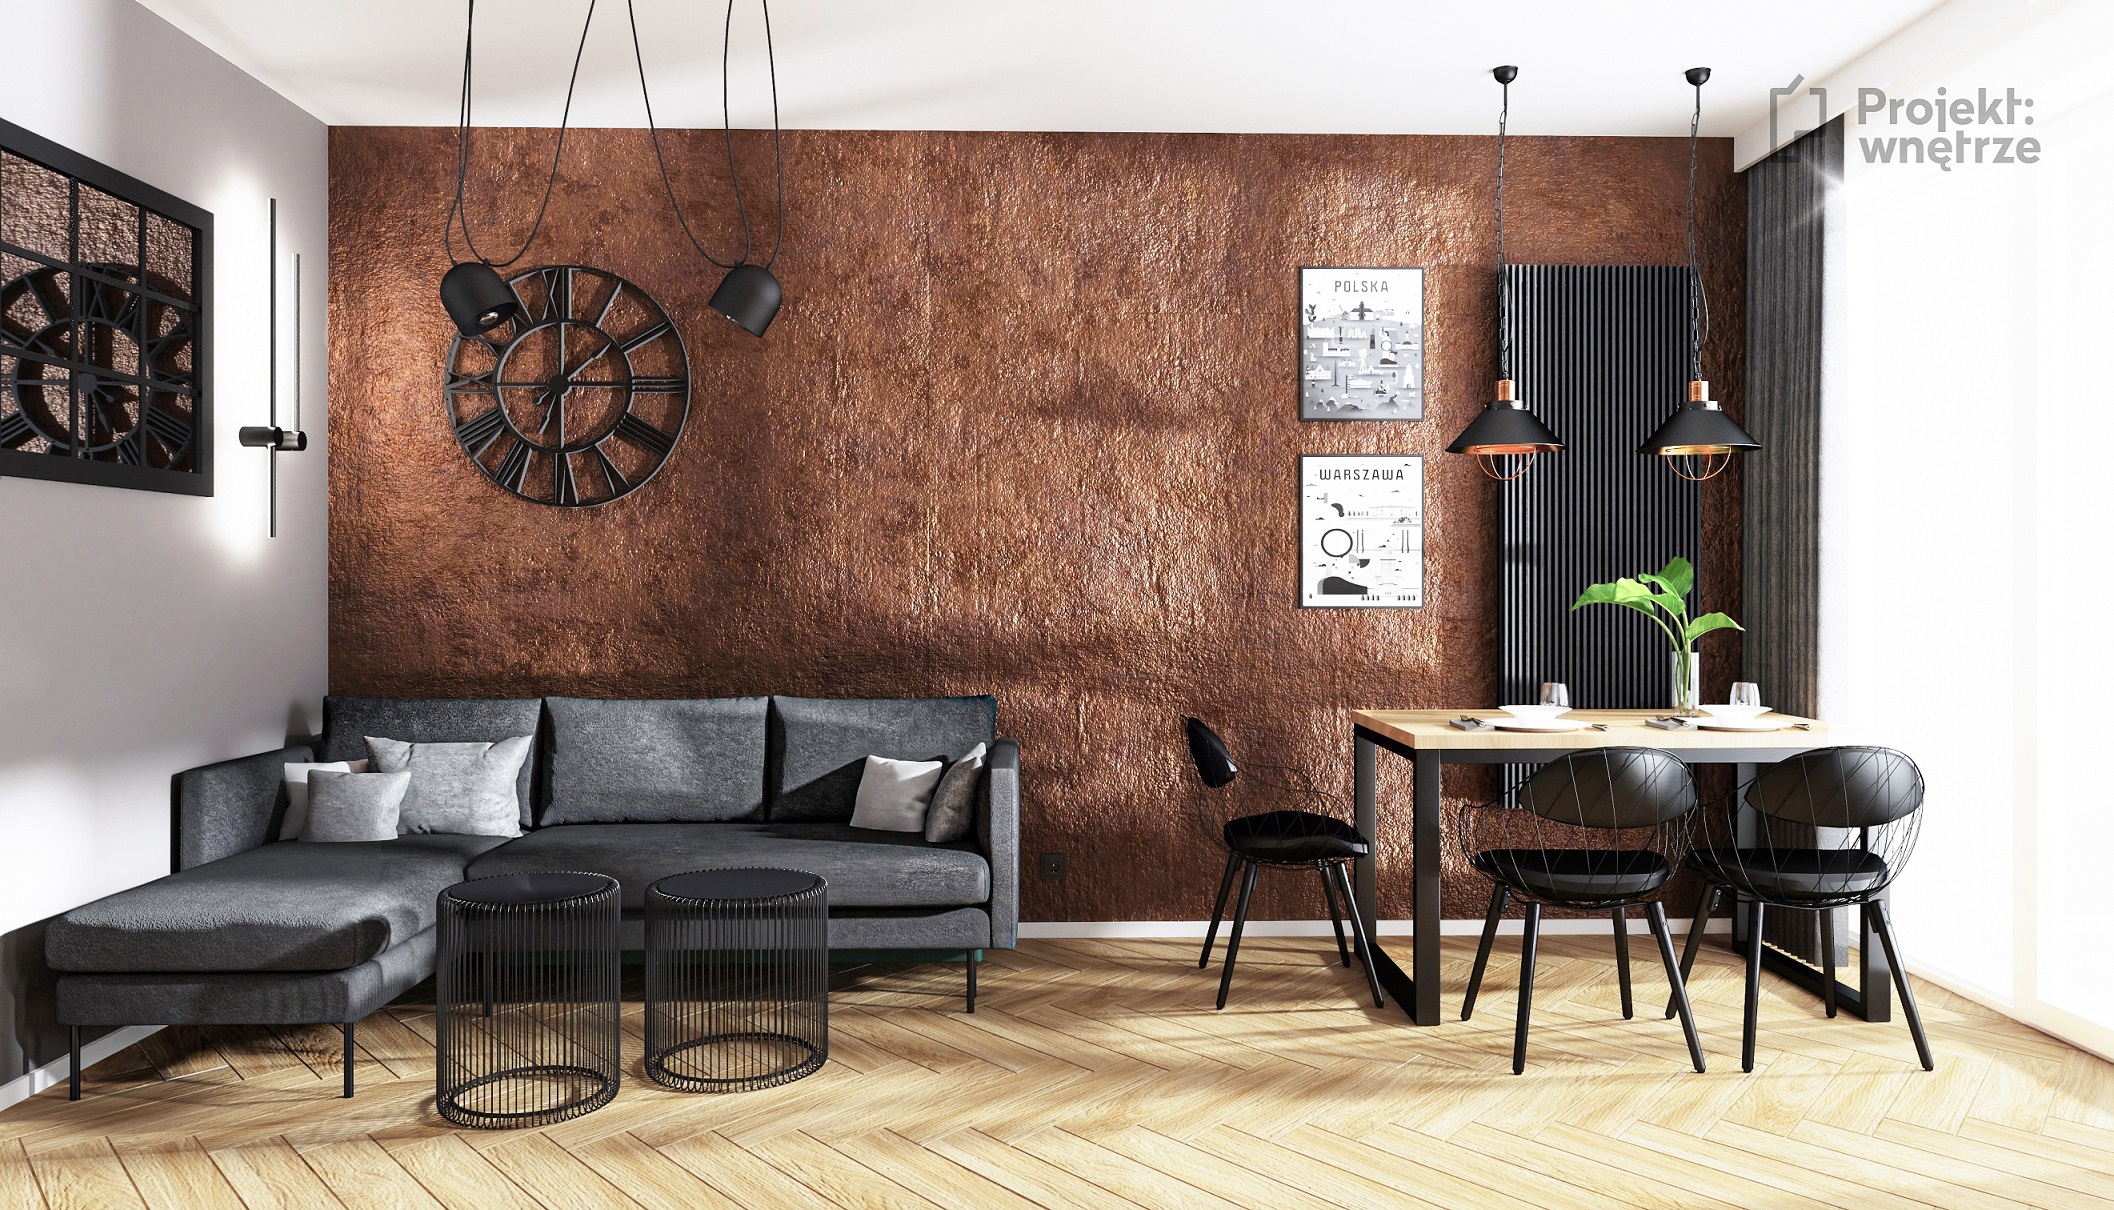 Projekt wnętrze salon w stylu loft cegła ściana jeger oxyd szare czarne lustro loft podłoga jodełka panel winylowy - projektowanie wnętrz Warszawa online (4)